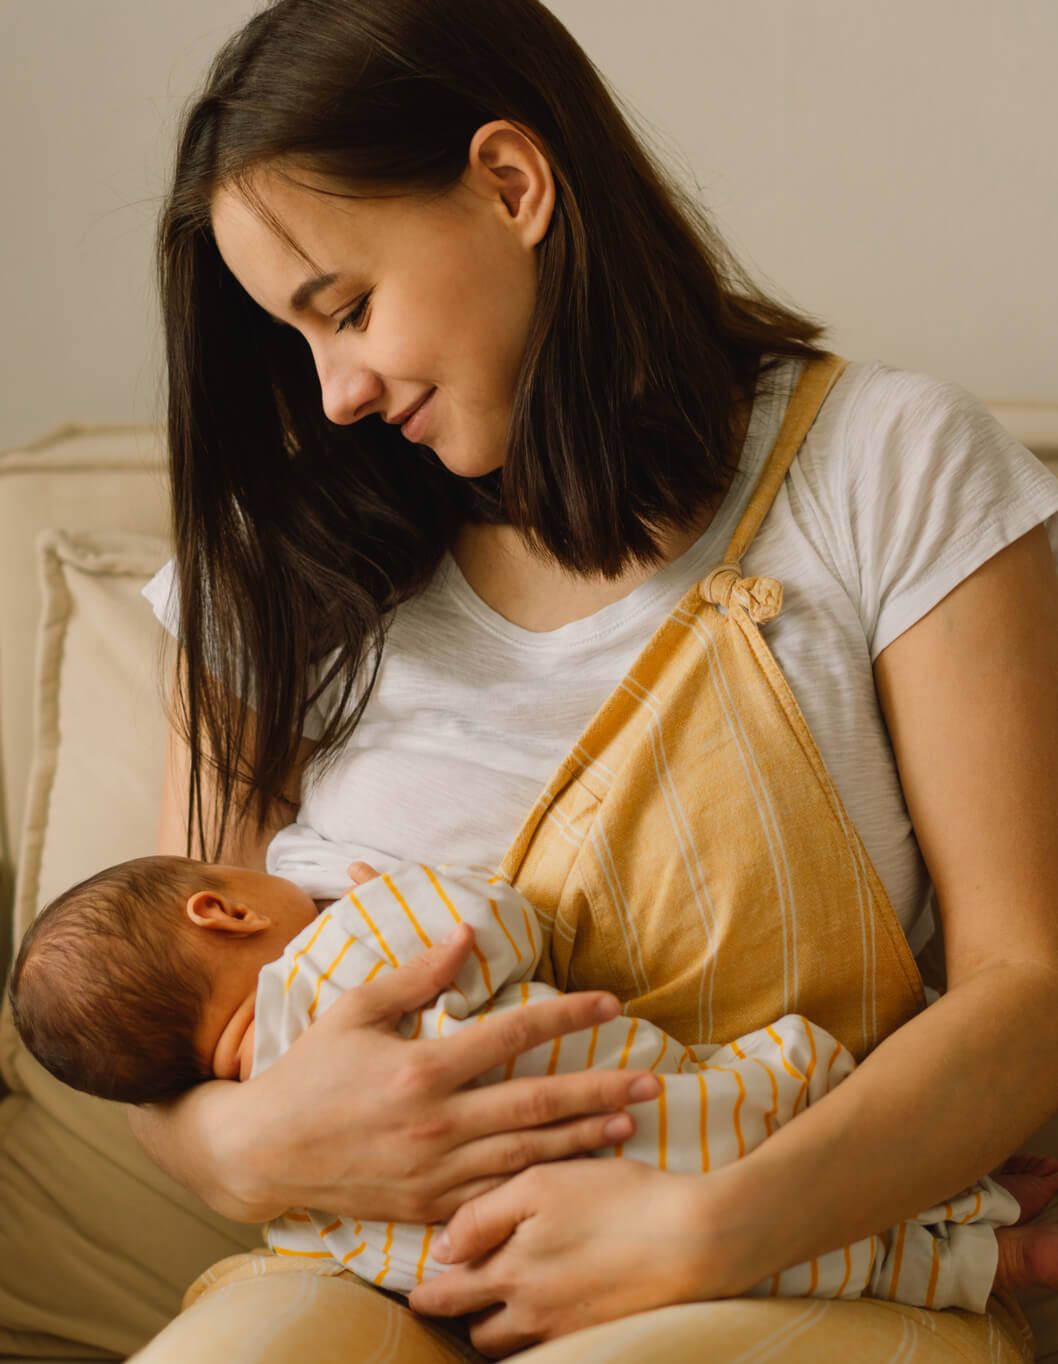 Newborn baby boy sucking milk from mothers breast.